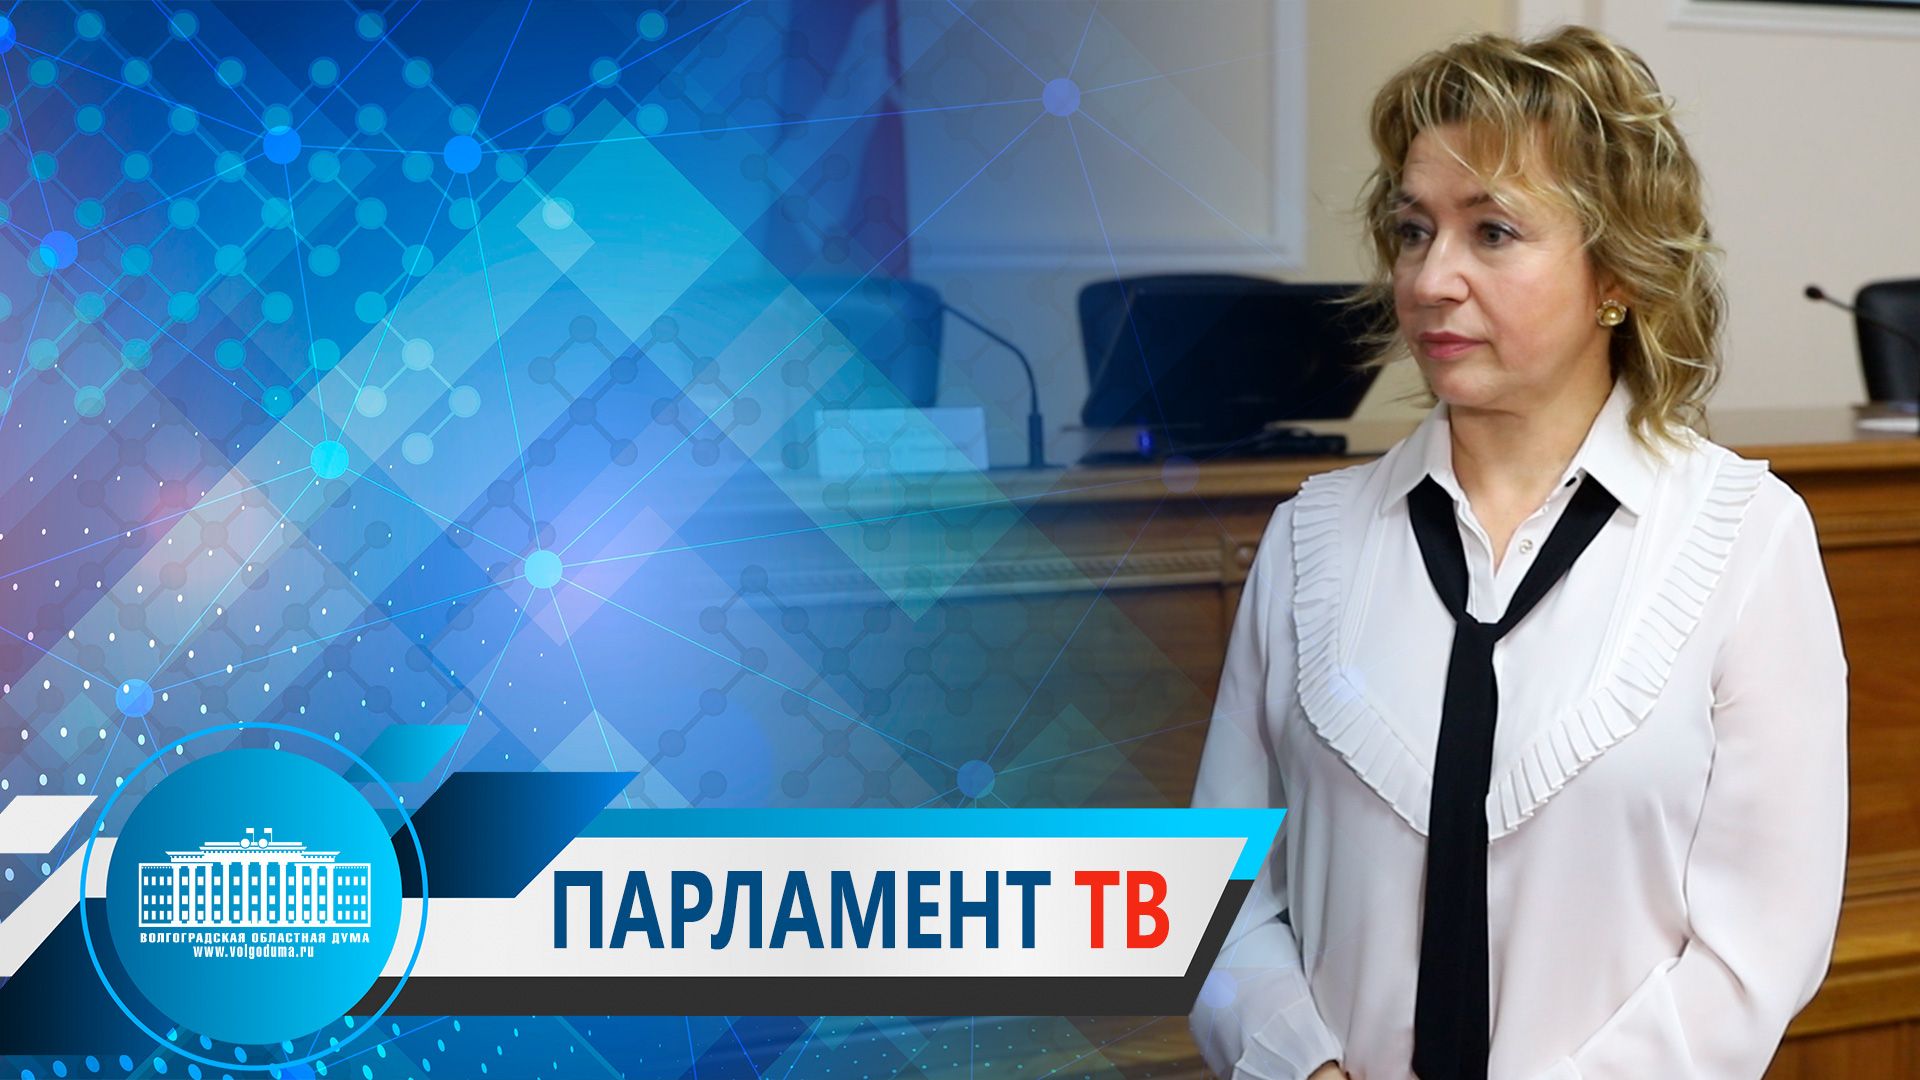 Парламентарии обсудили основные направления бюджетной и налоговой политики (Т.Бухтина)